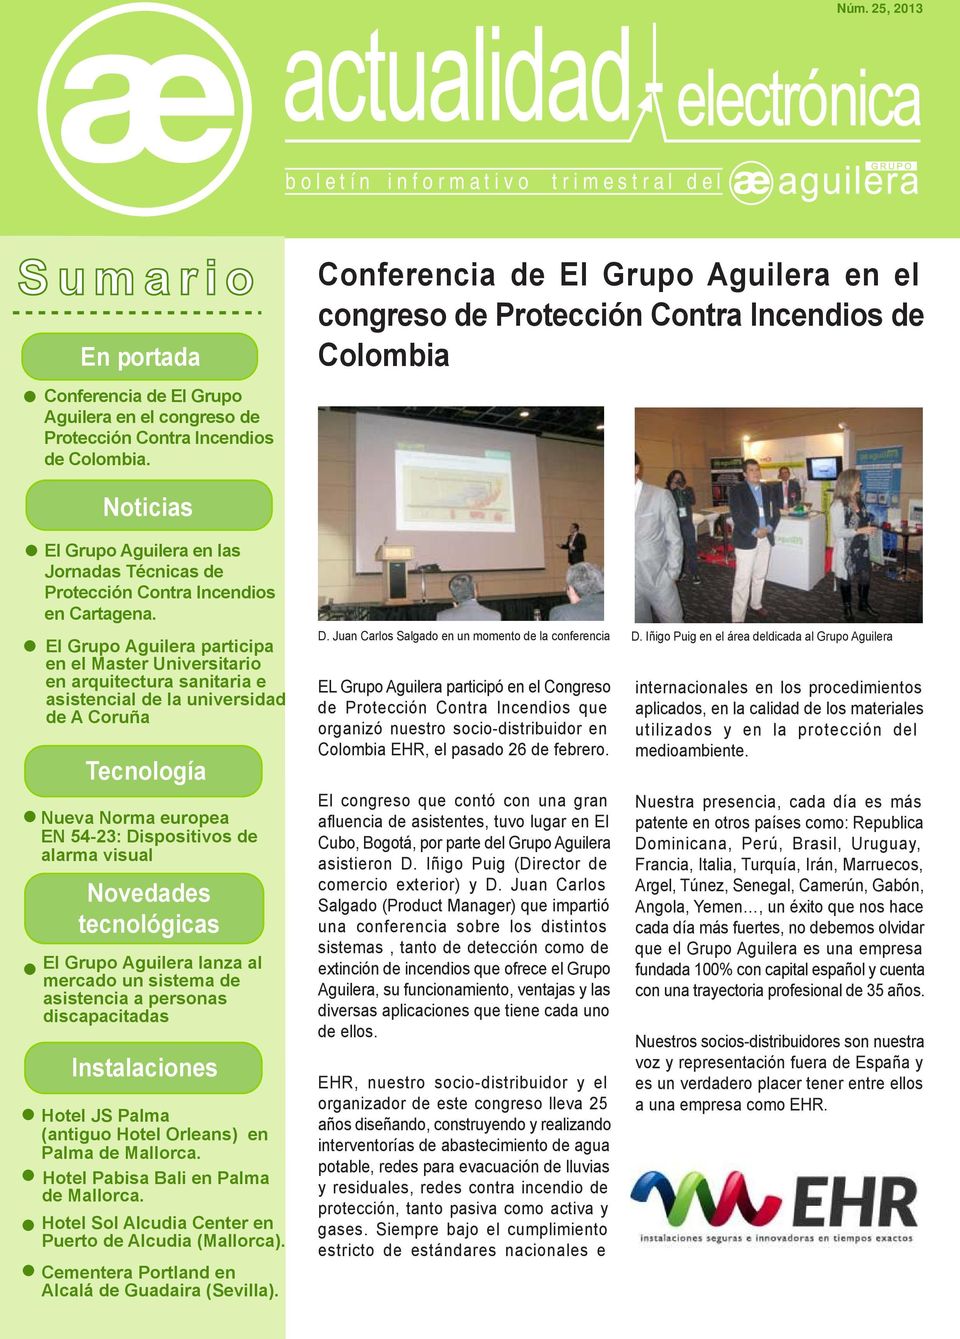 El Grupo Aguilera participa en el Master Universitario en arquitectura sanitaria e asistencial de la universidad de A Coruña Tecnología Nueva Norma europea EN 54-23: Dispositivos de alarma visual